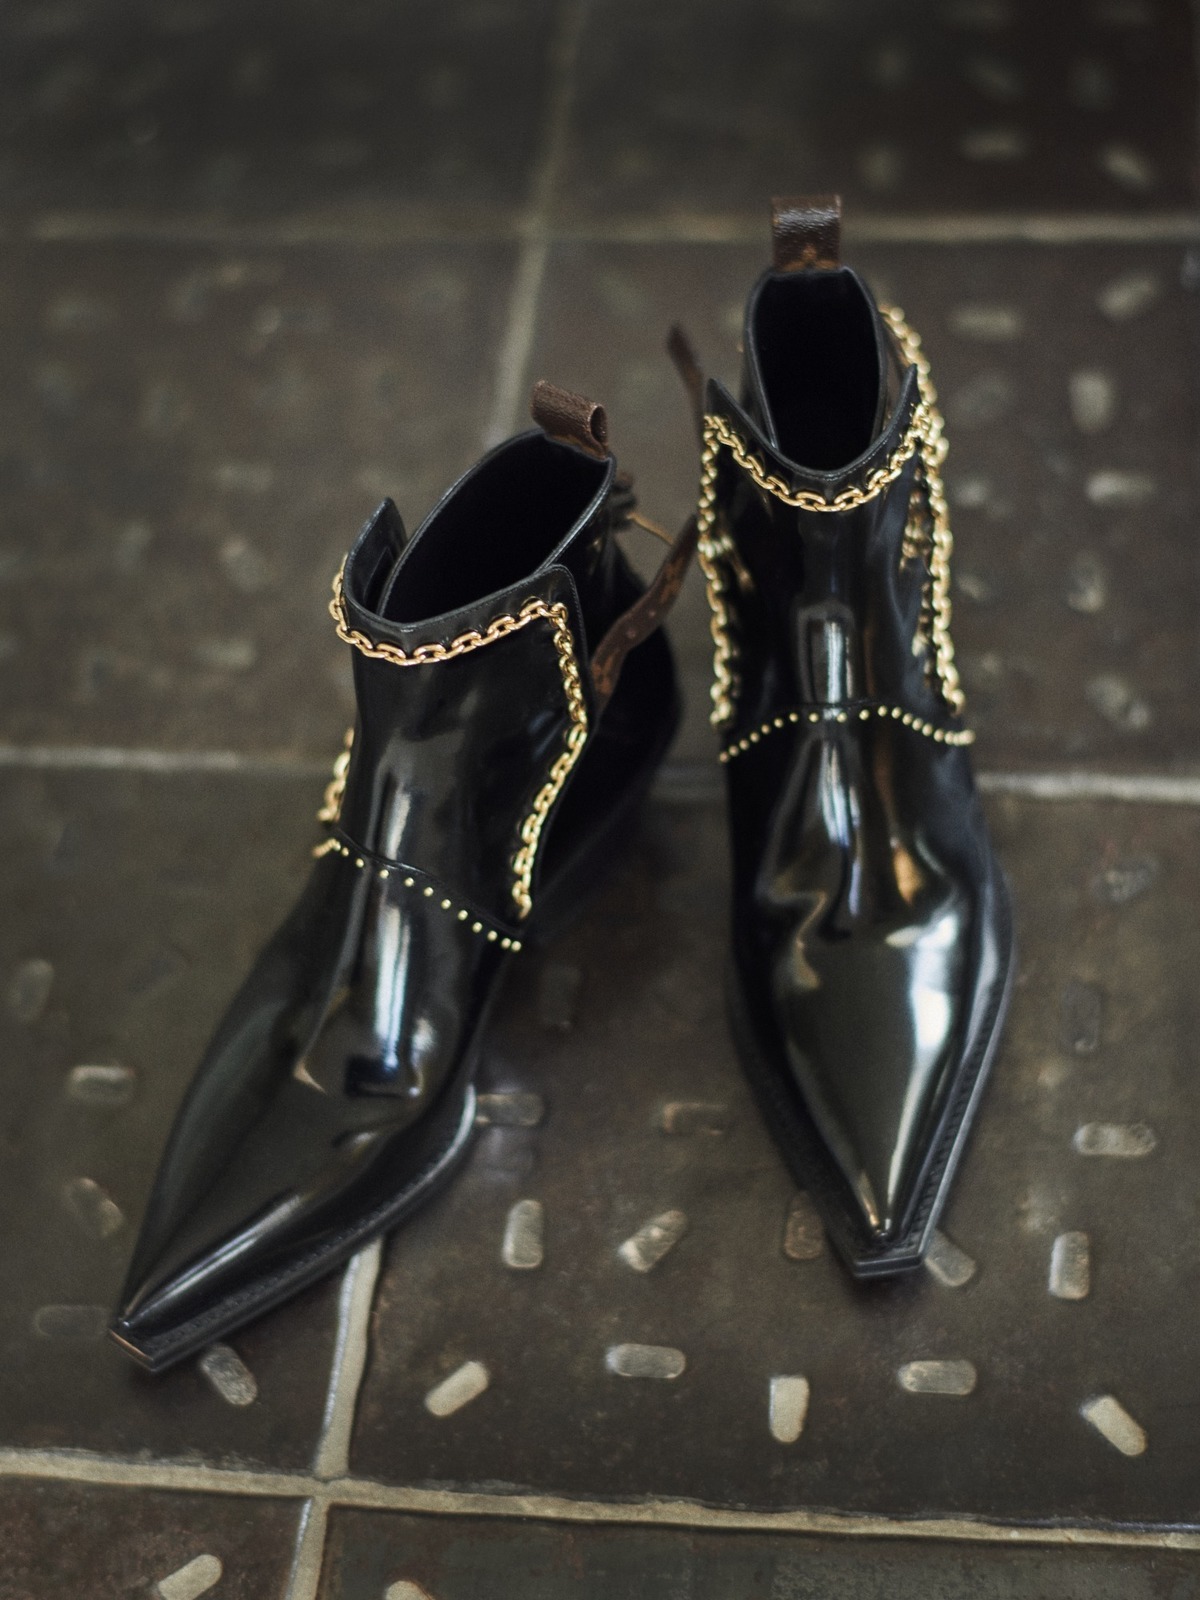 ルイ・ヴィトンの新作ブーツ、モノグラム・フラワー型ヒールやジュエリー風ゴールドチェーンがポイントに - ファッションプレス